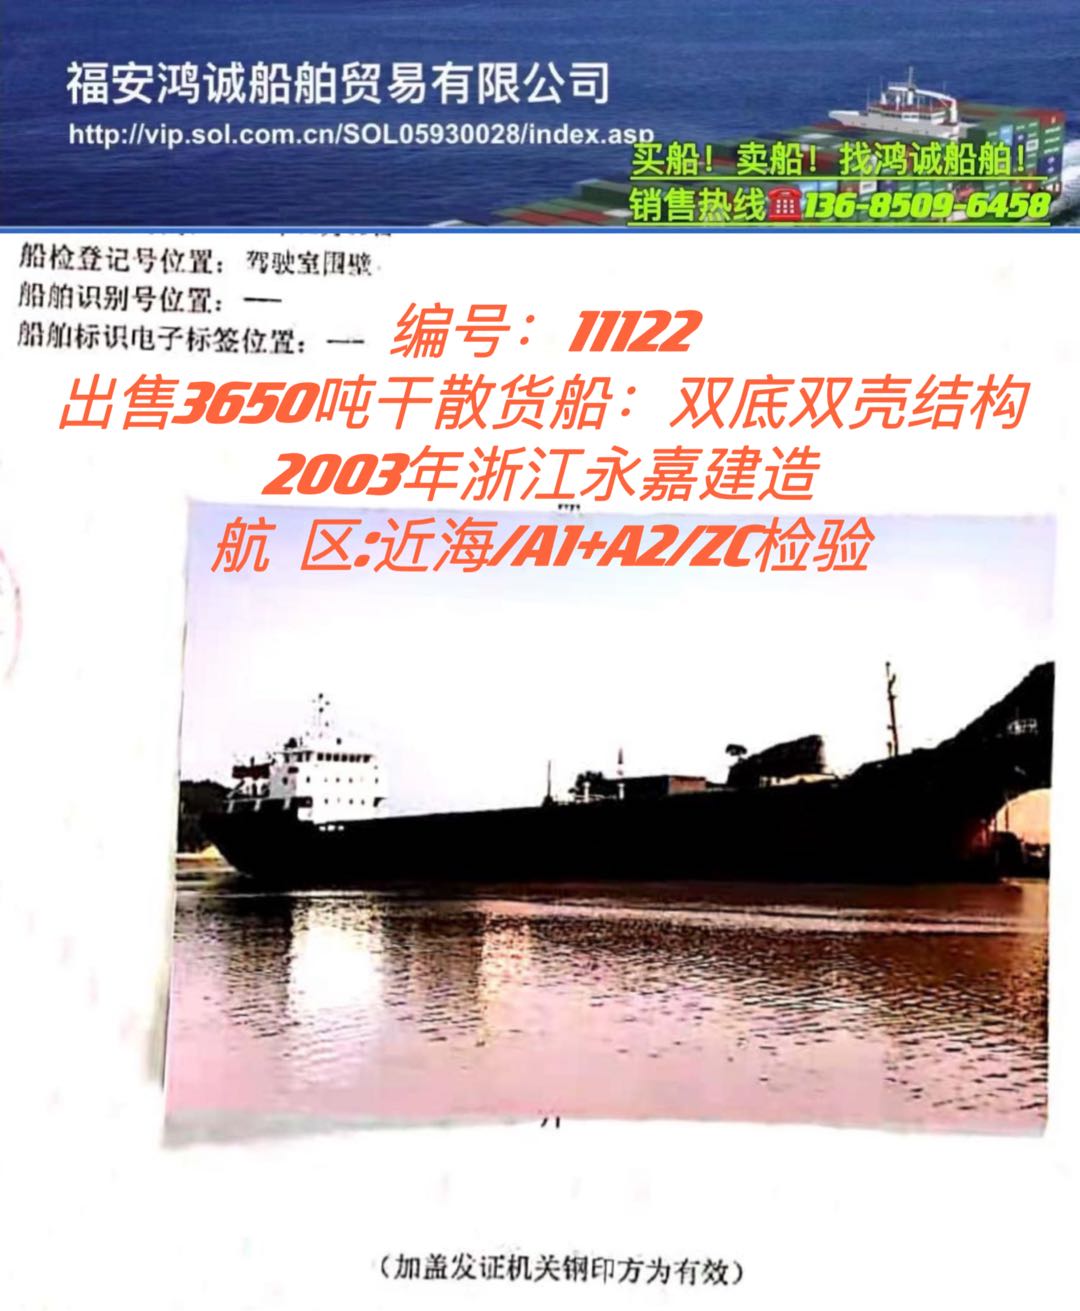 出售03年3650吨双壳干货船